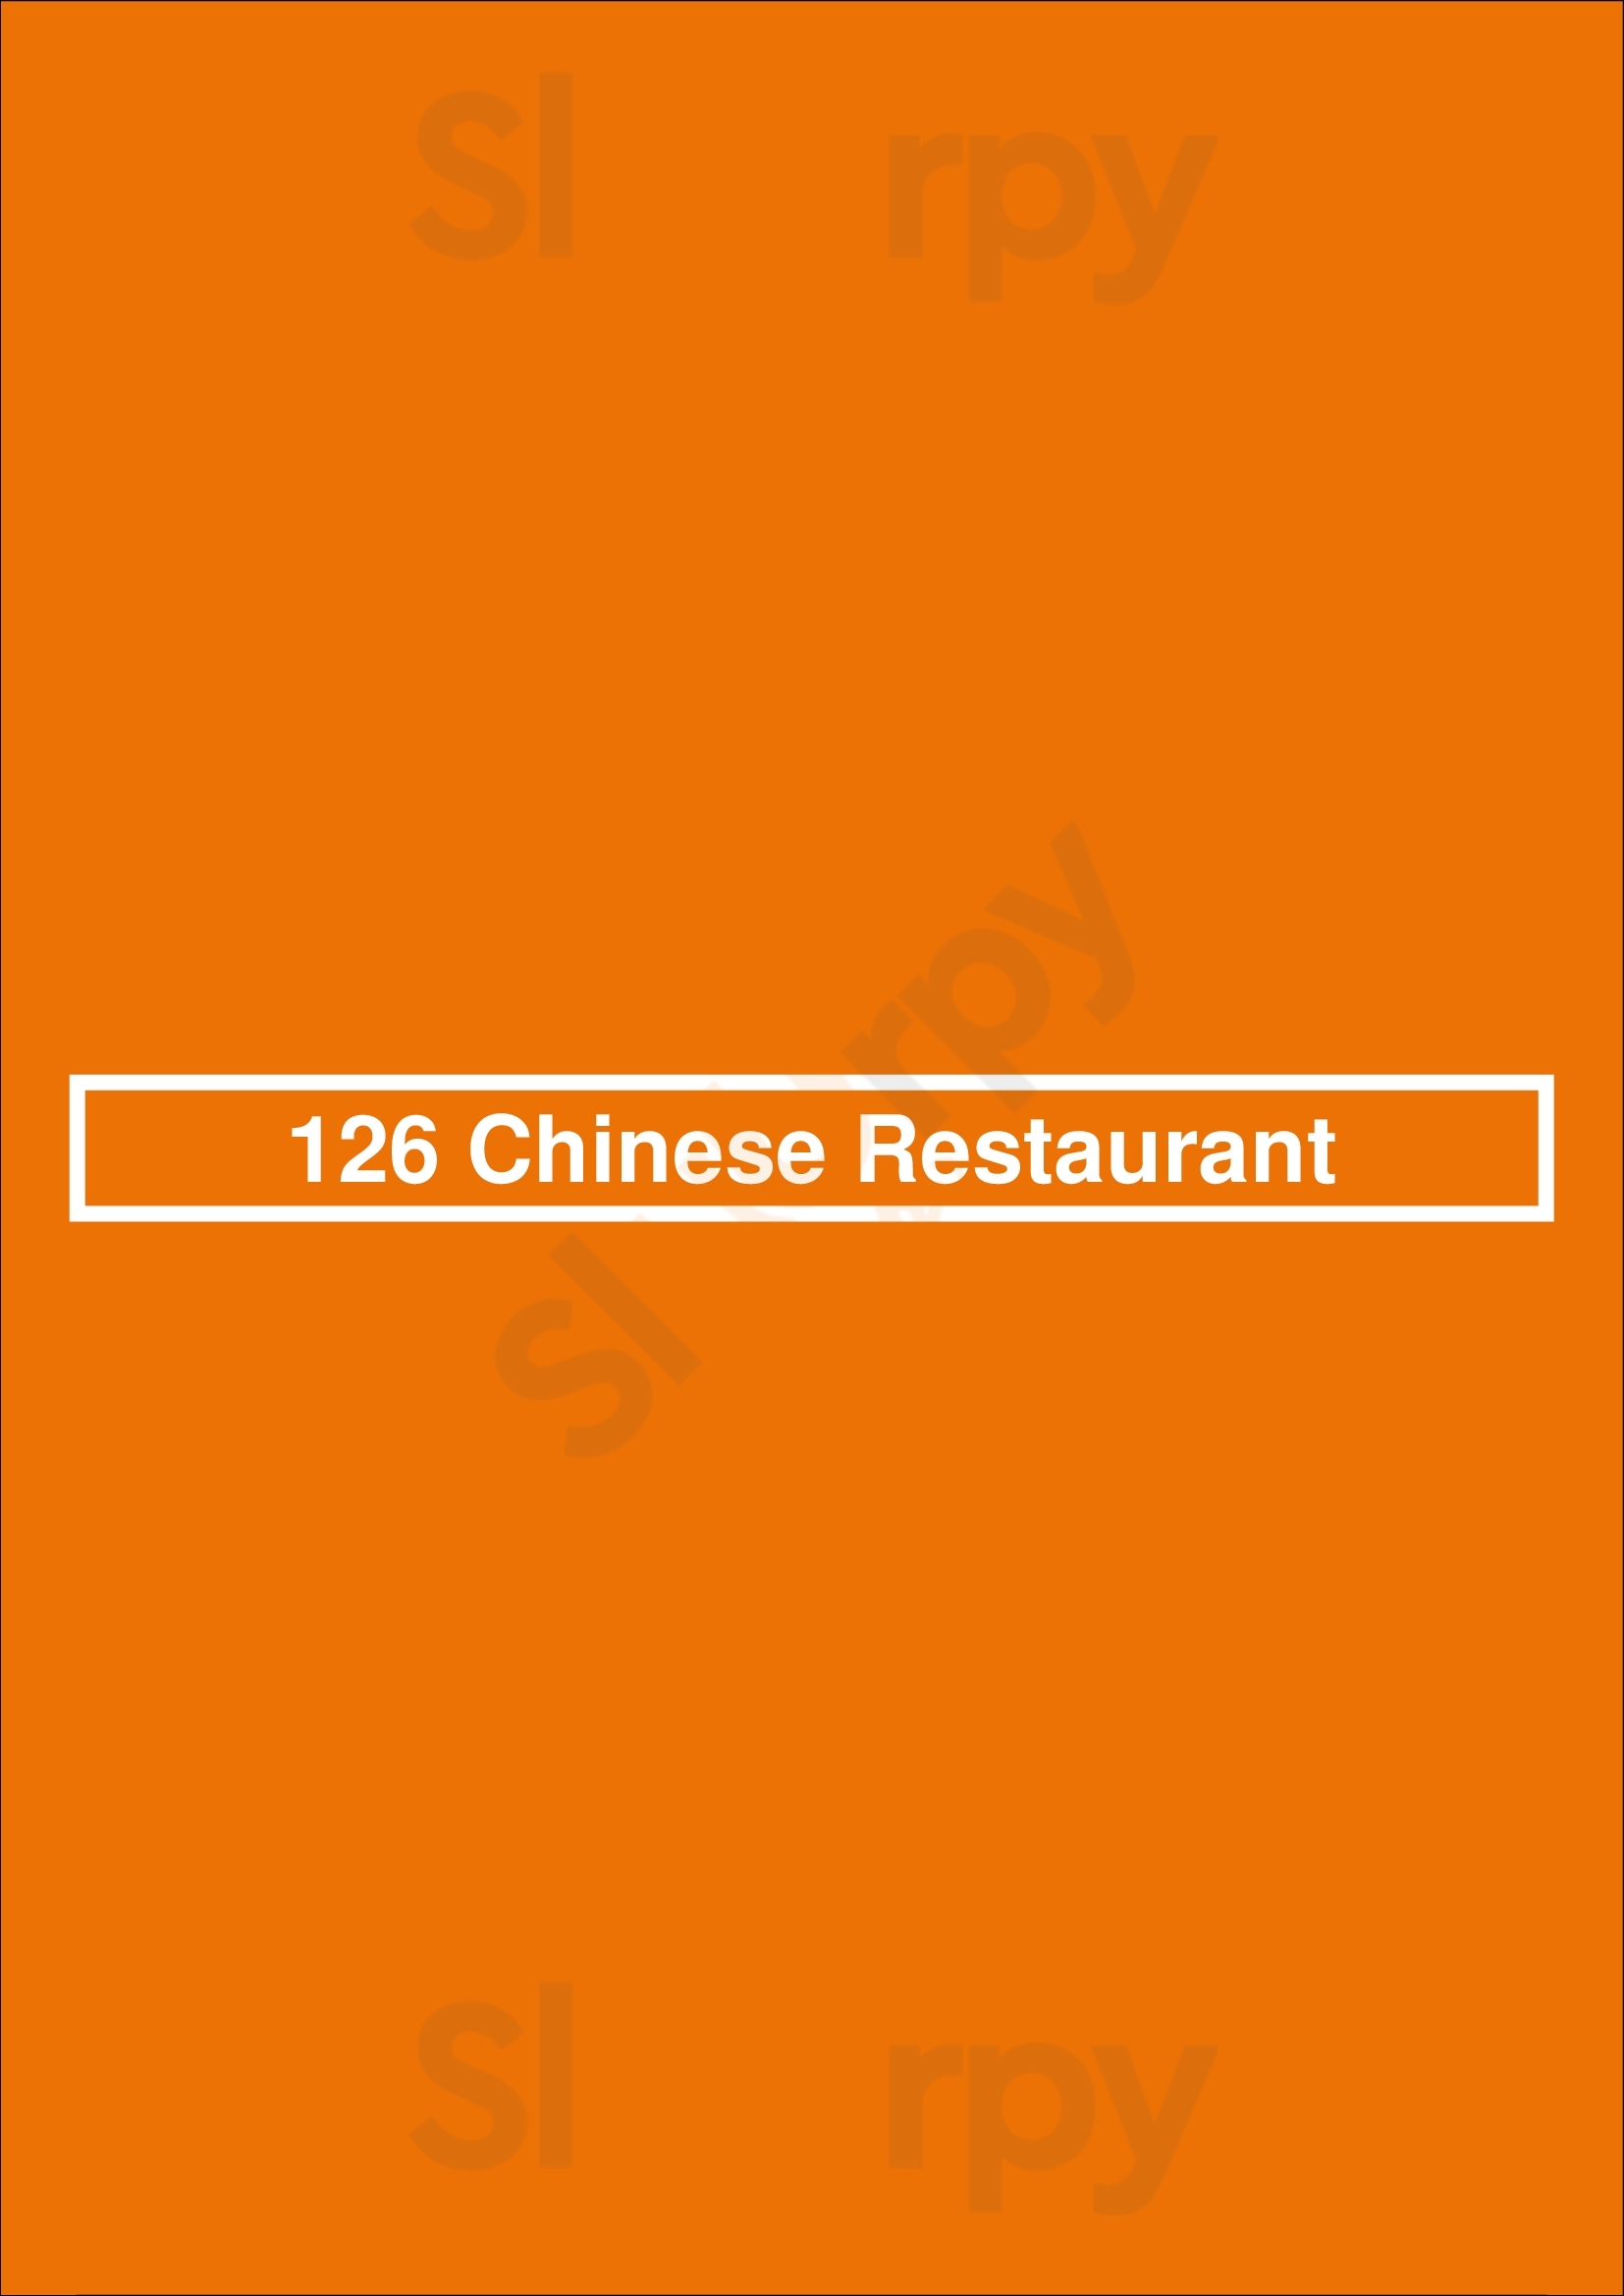 126 Chinese Restaurant Kitchener Menu - 1